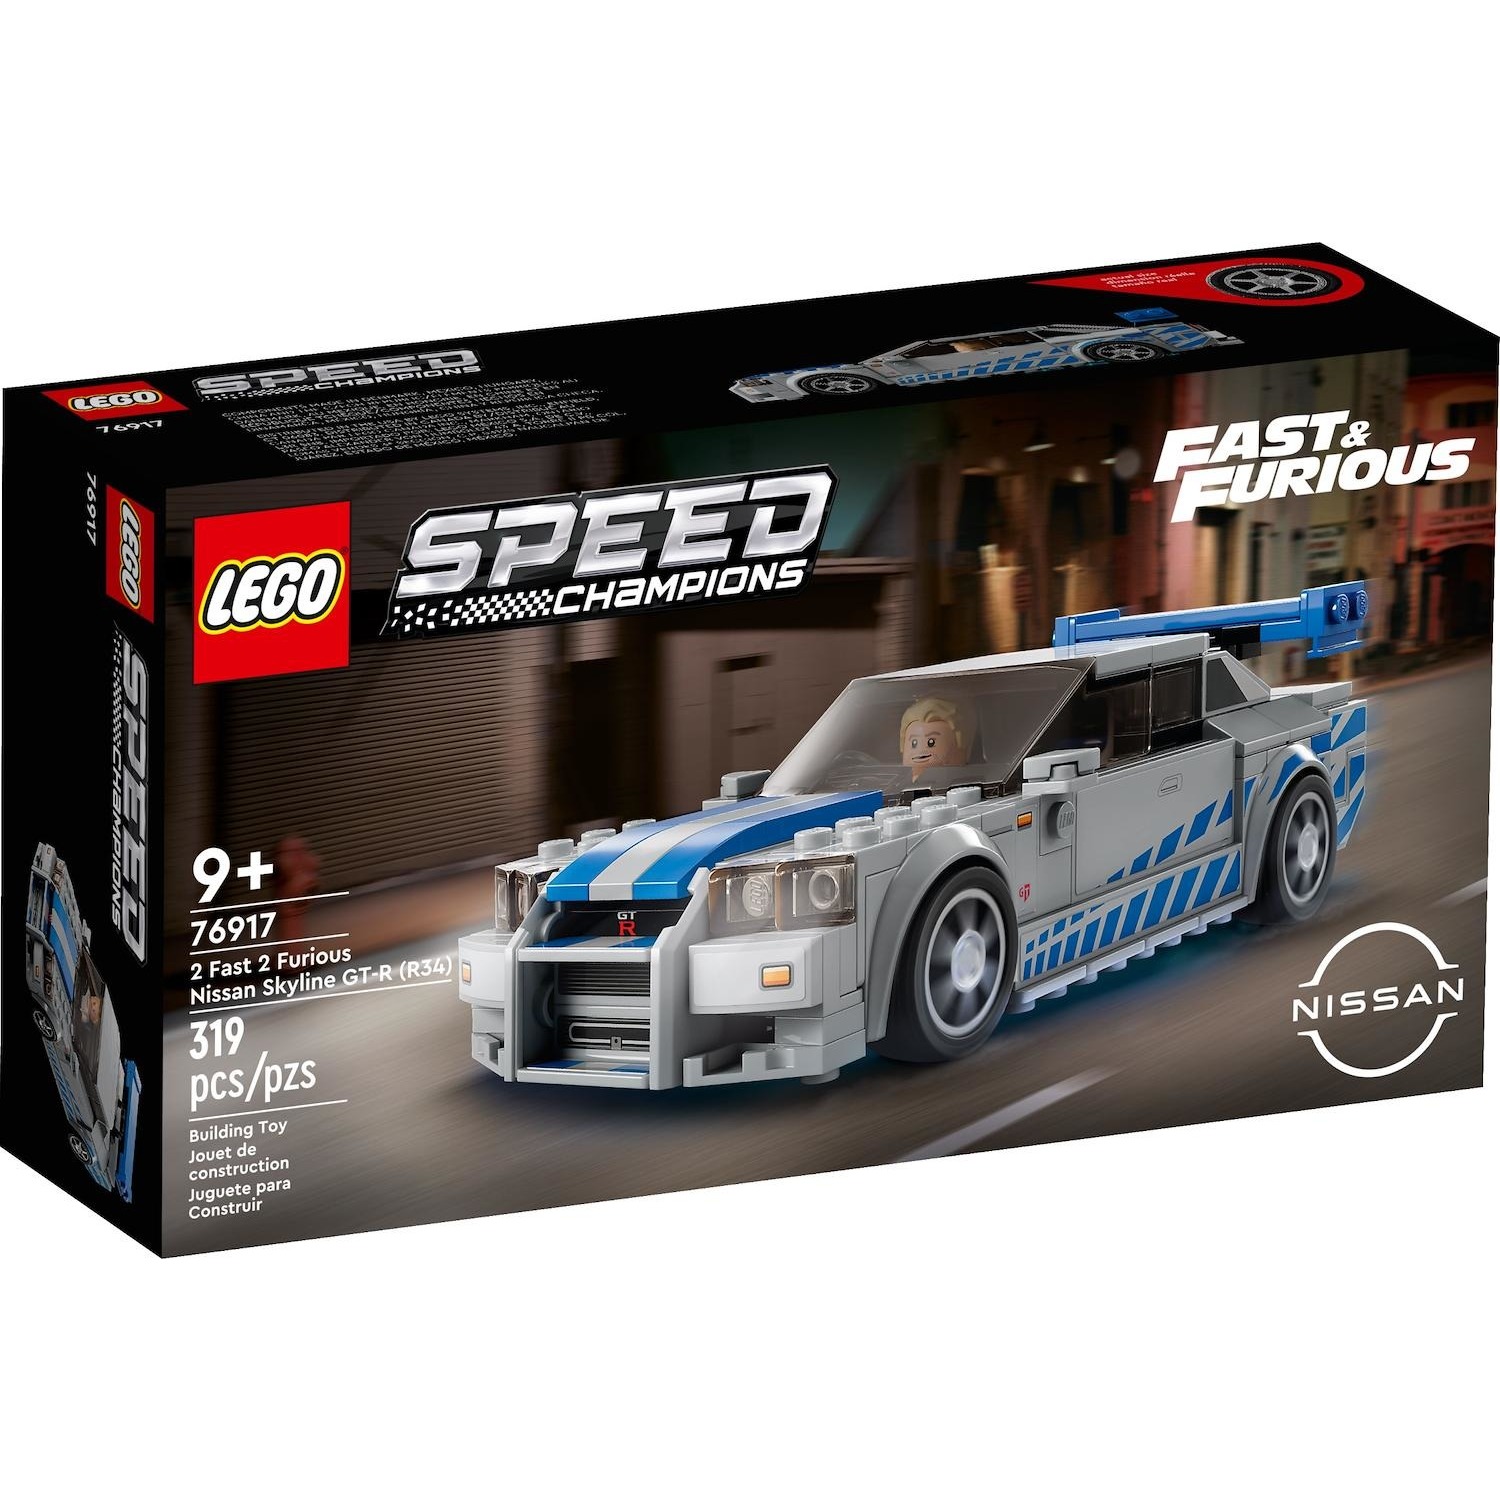 Immagine per Lego Speed 2 Fast 2 Furious Nissan da DIMOStore